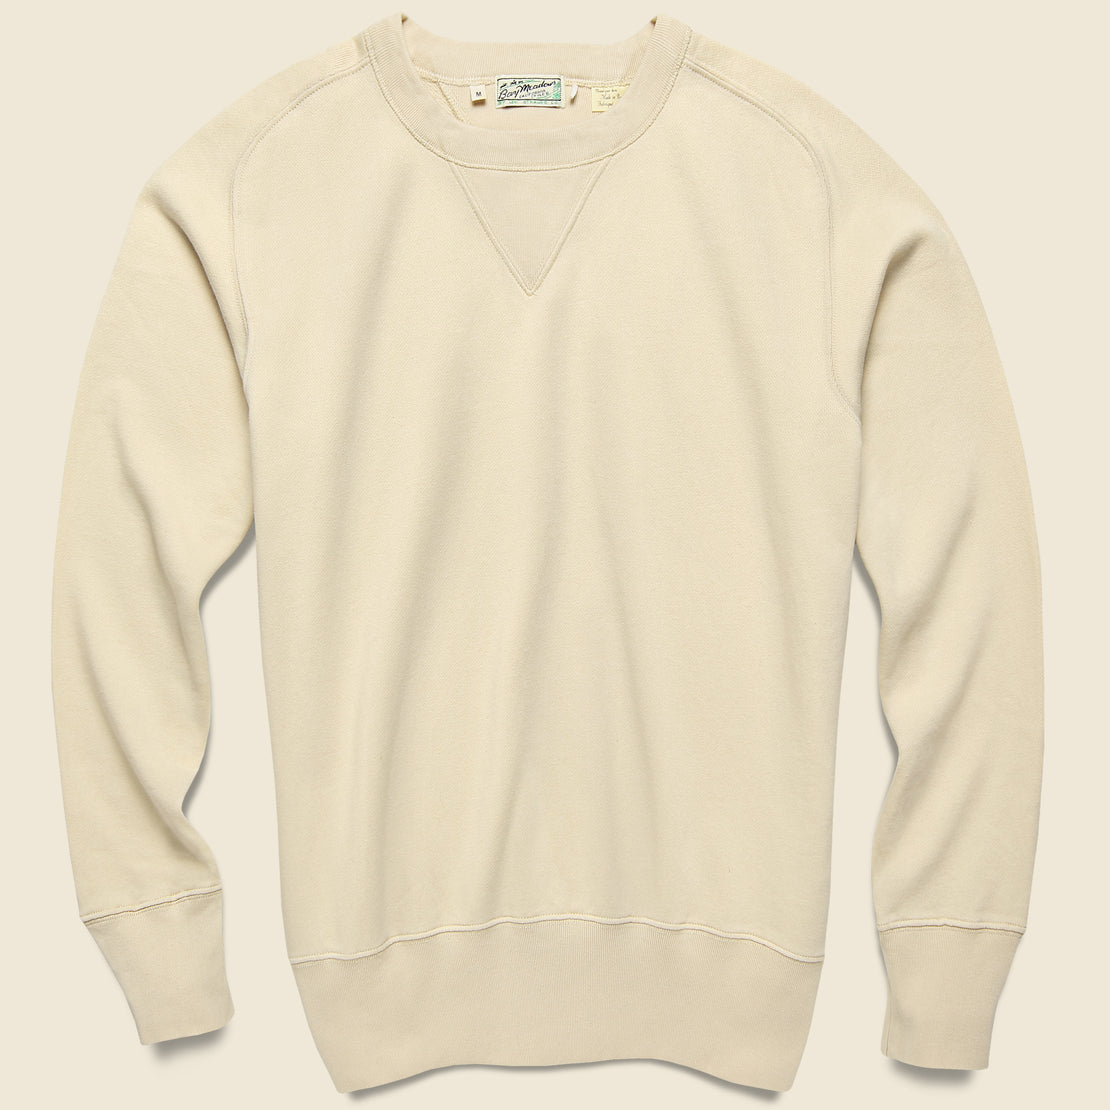 Levis Vintage Clothing Bay Meadows Sweatshirt - Double Cream